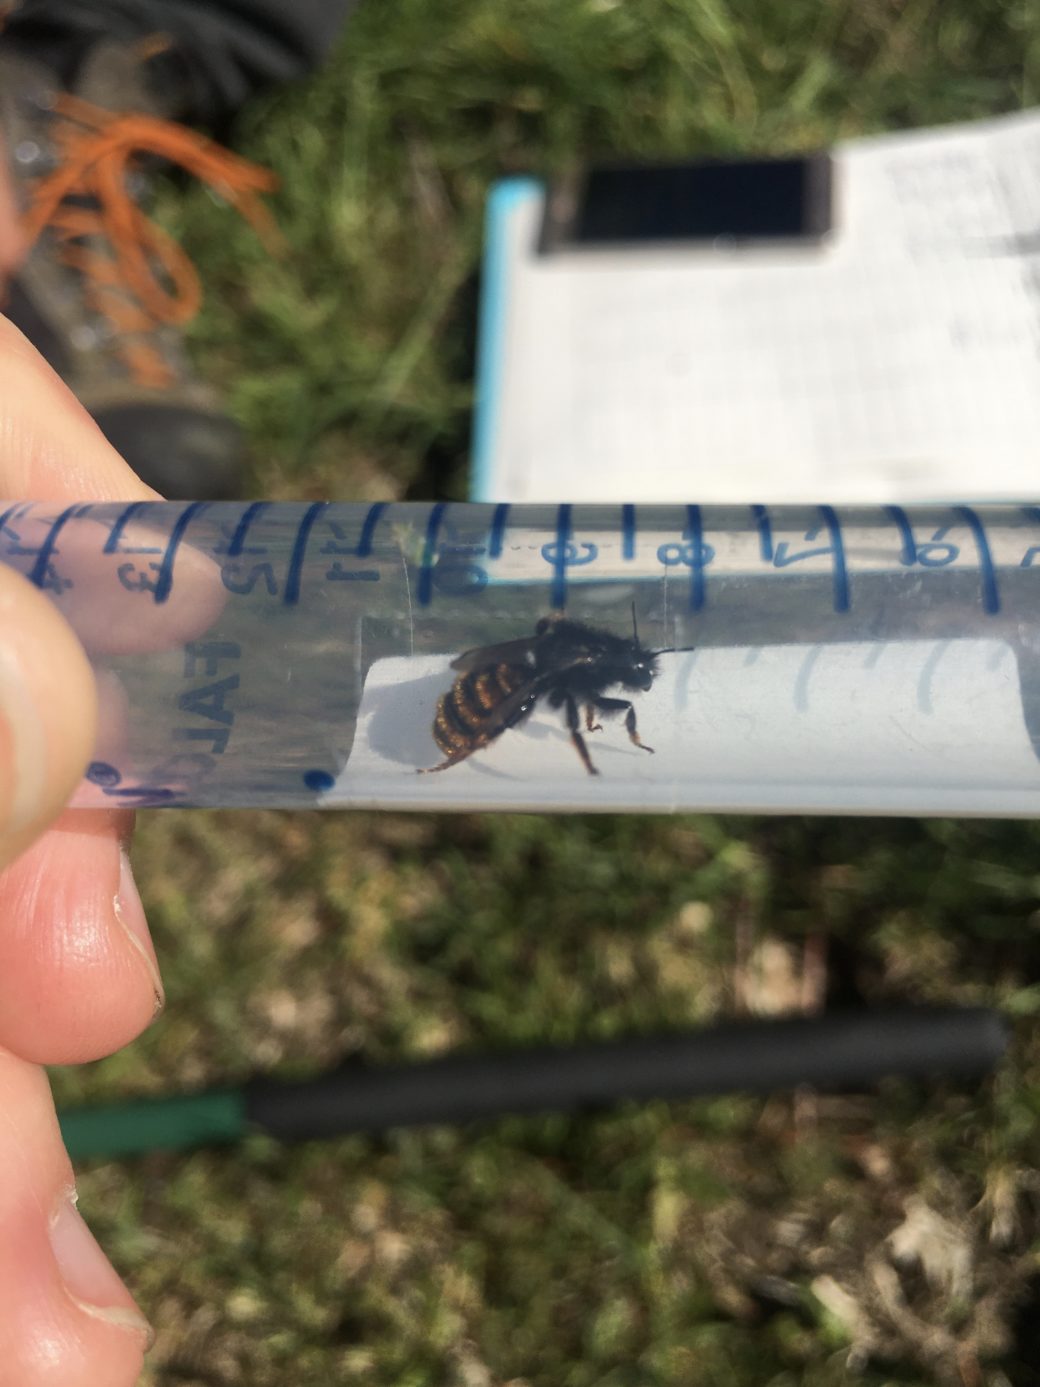 Abbildung: Das Foto zeigt eine gefangene, lebende Mauerbiene in einem transparenten Kunststoff-Röhrchen mit blau aufgedruckter Maß-Einteilung, das waagerecht vor die Kamera gehalten wird. Im Hintergrund ist Wiesenboden zu erkennen.